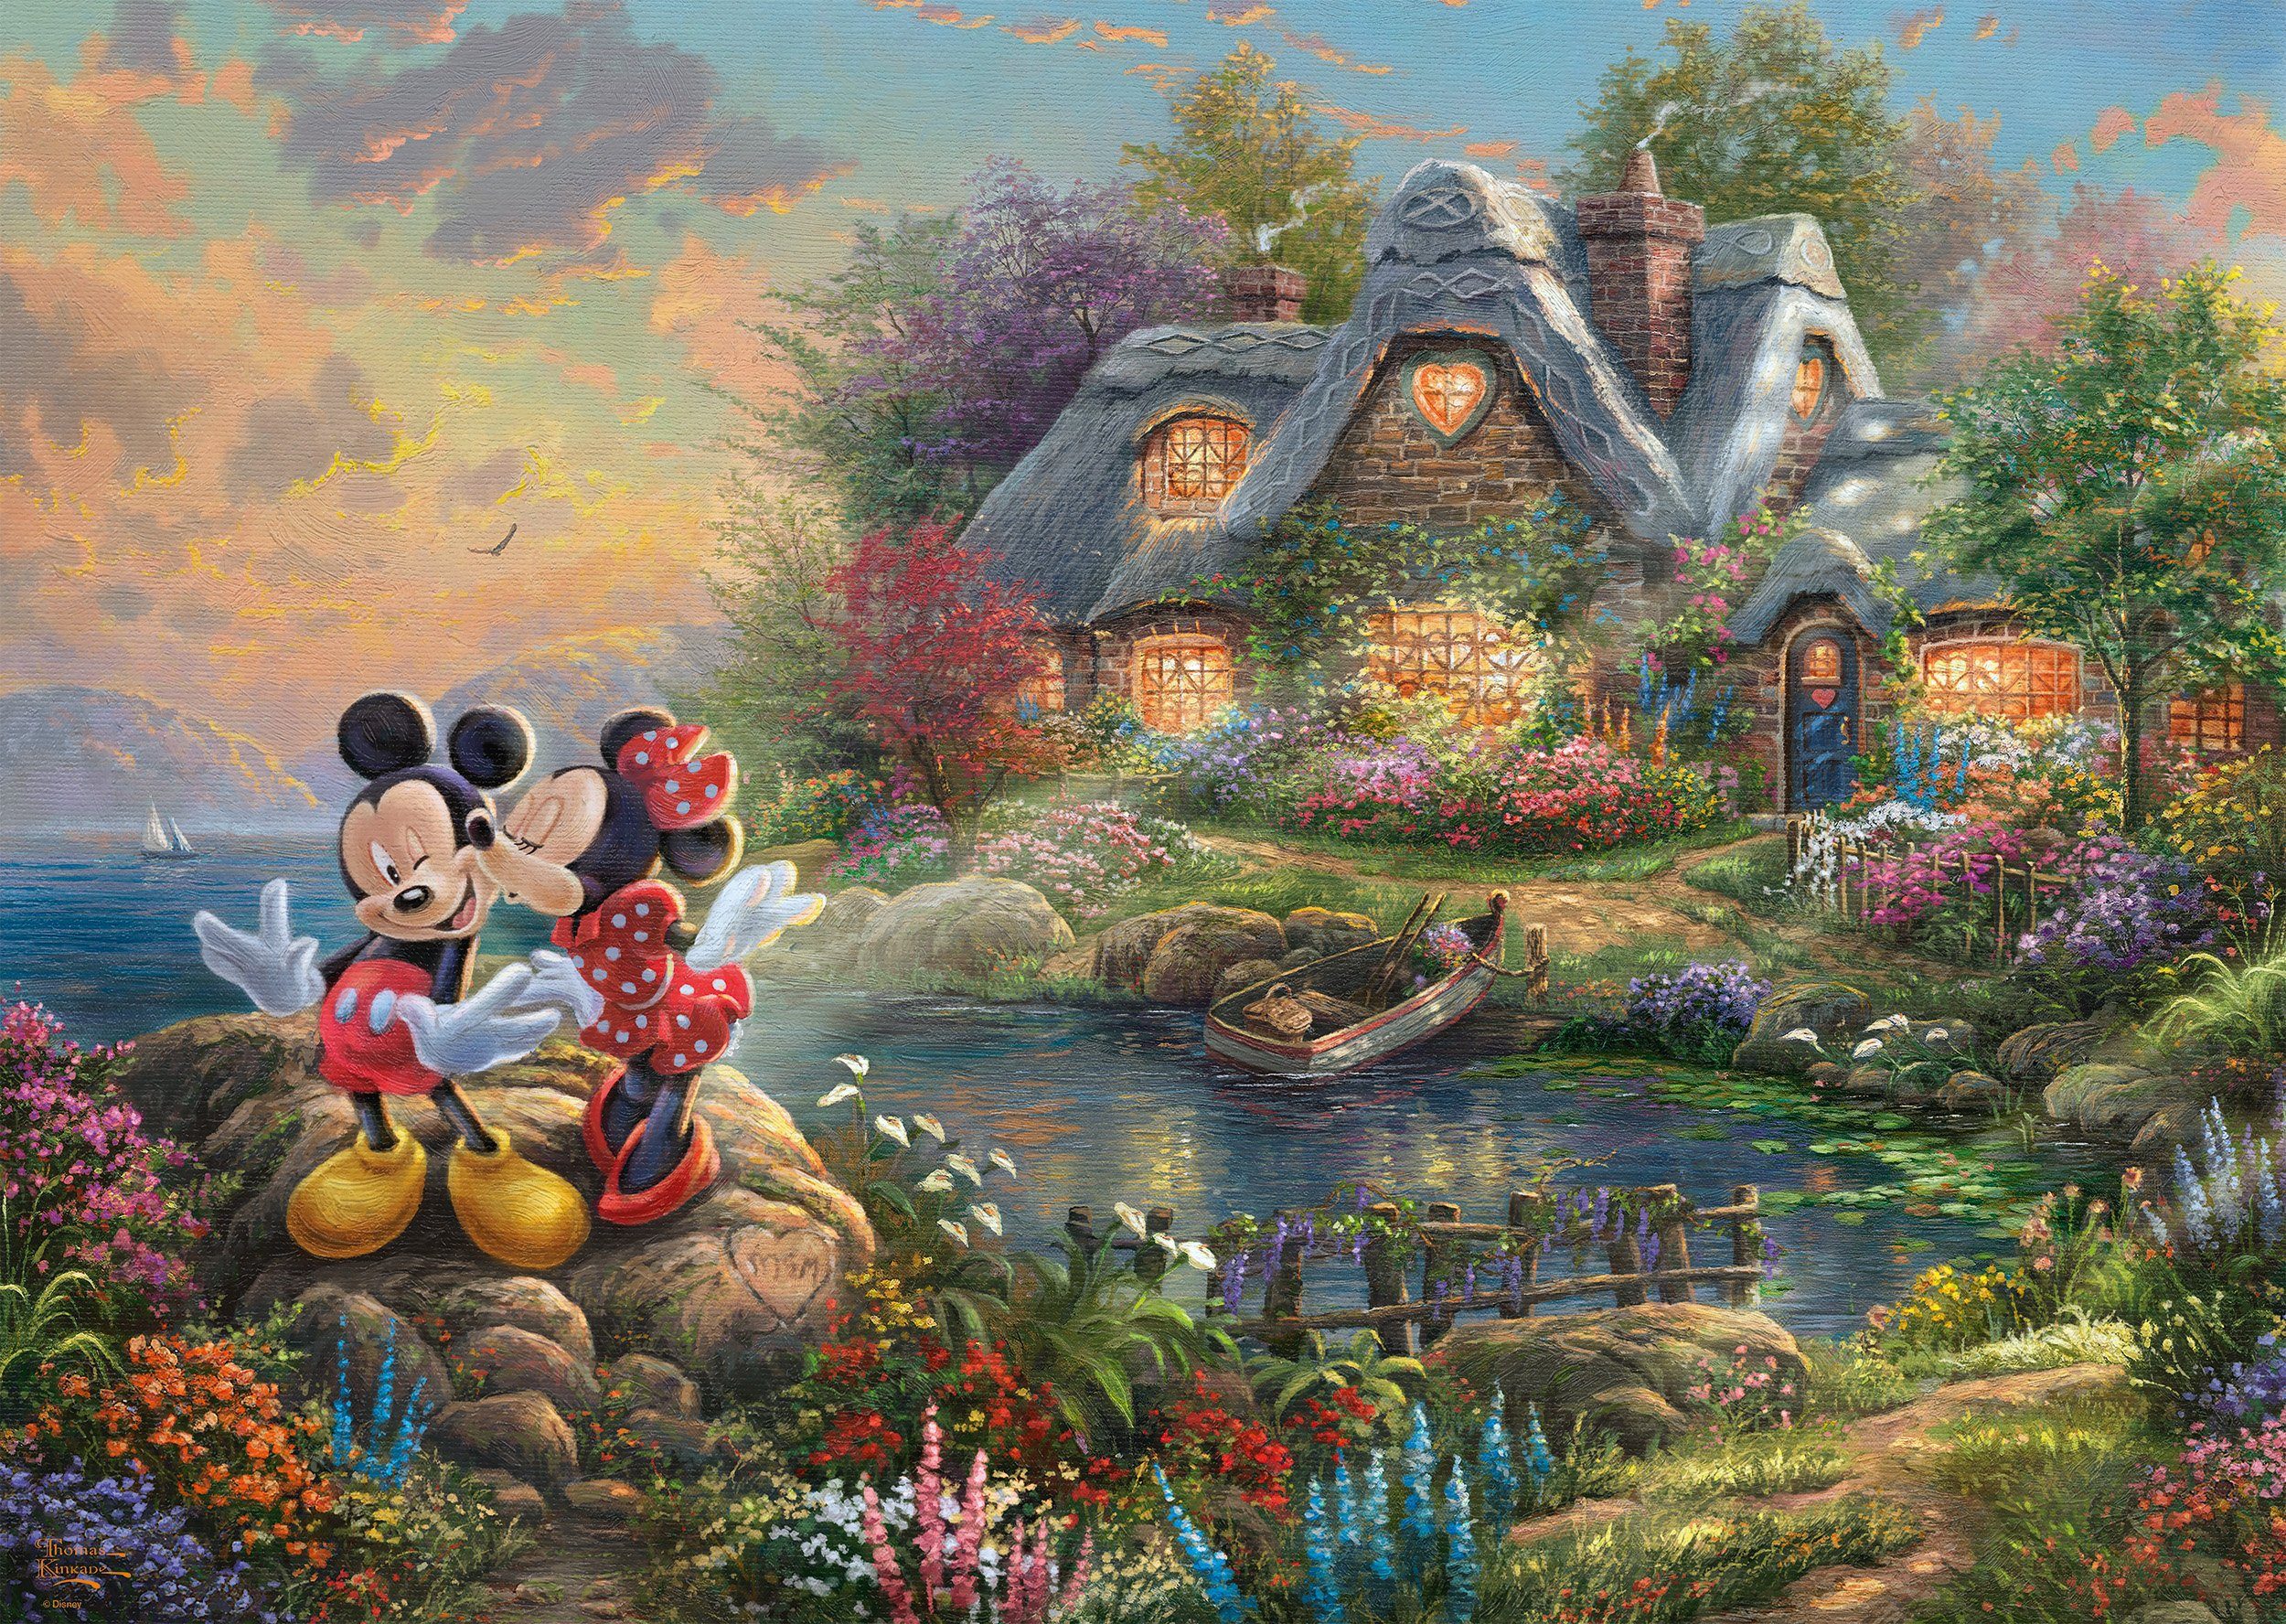 Schmidt Spiele Puzzle Disney, & Thomas Mickey 1000 Puzzleteile, Sweethearts Minnie, Kinkade